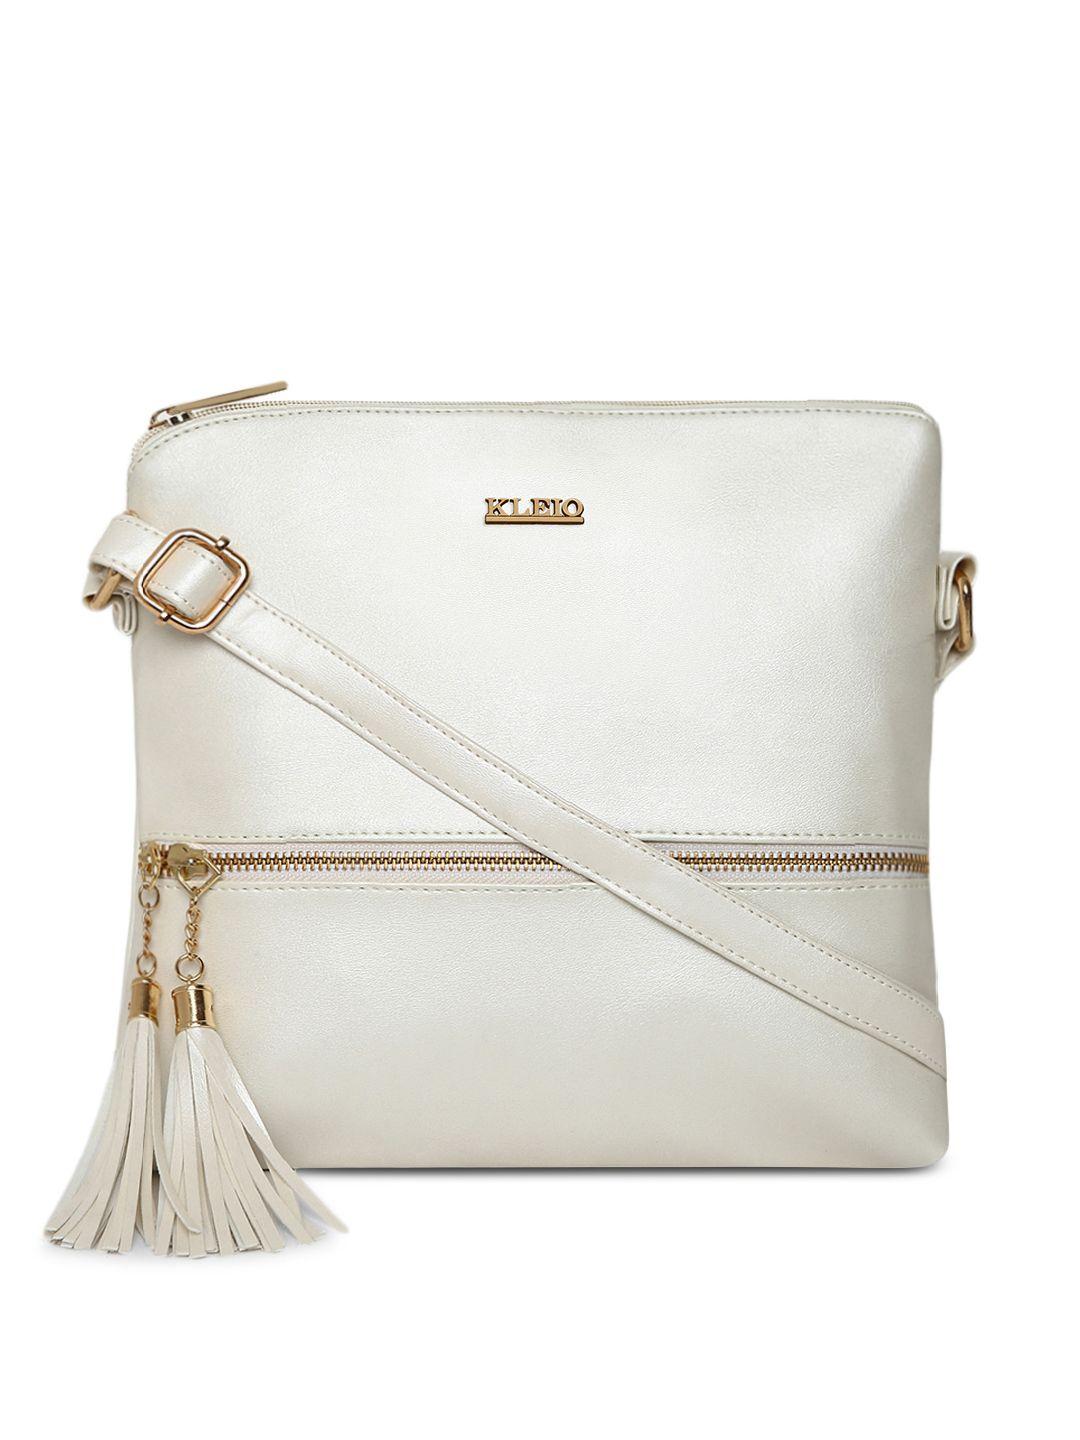 kleio off-white solid tasseled sling bag